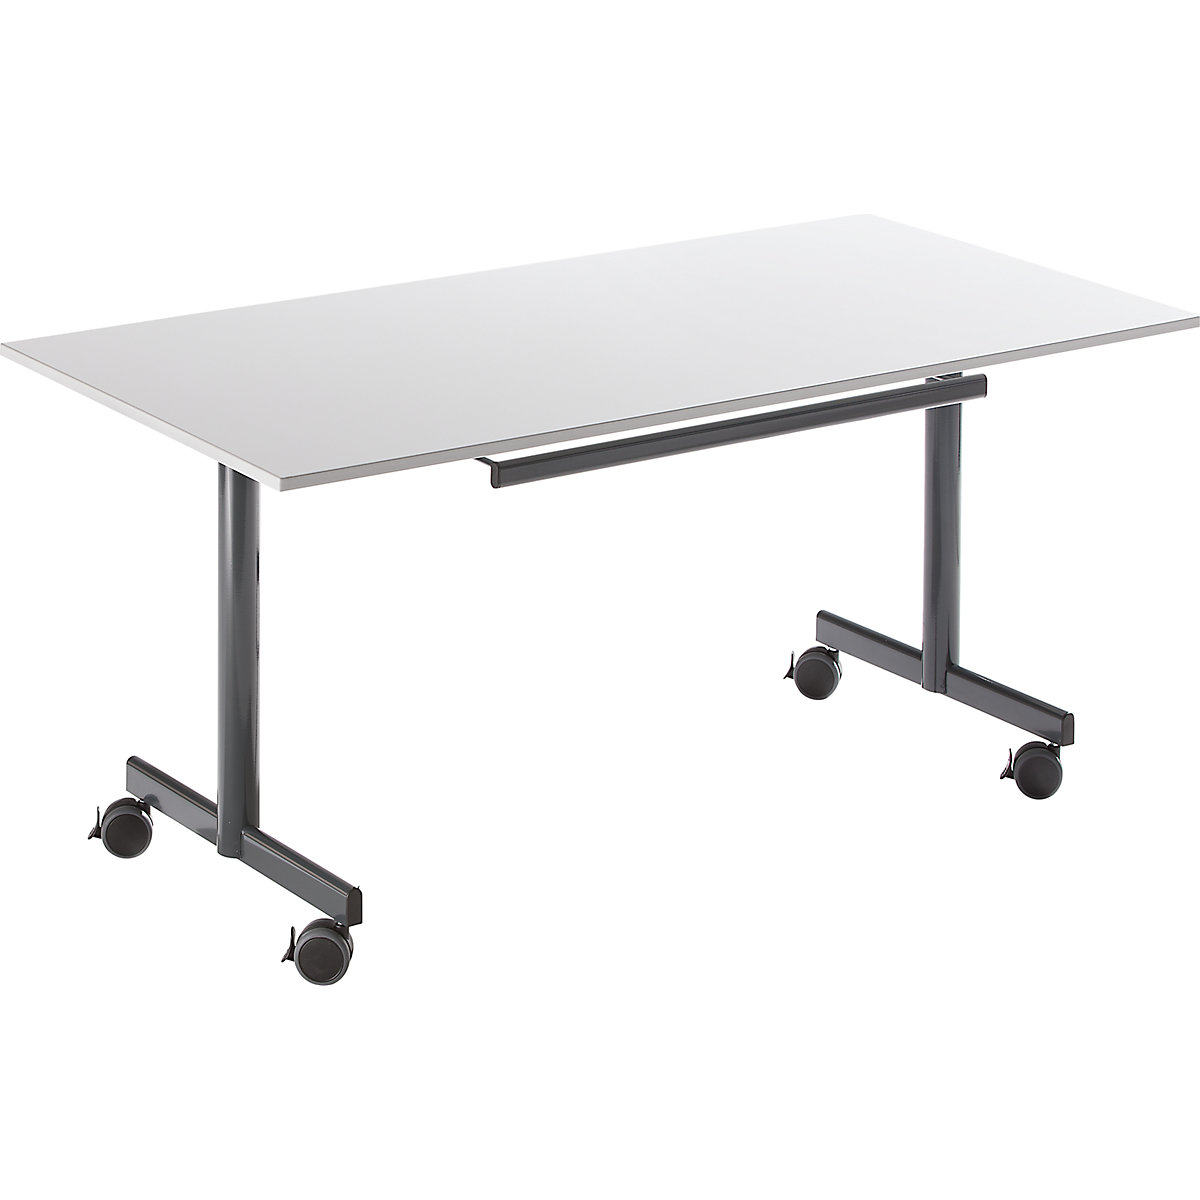 Table mobile à plateau rabattable, h x l x p 720 x 1200 x 800 mm, gris-3